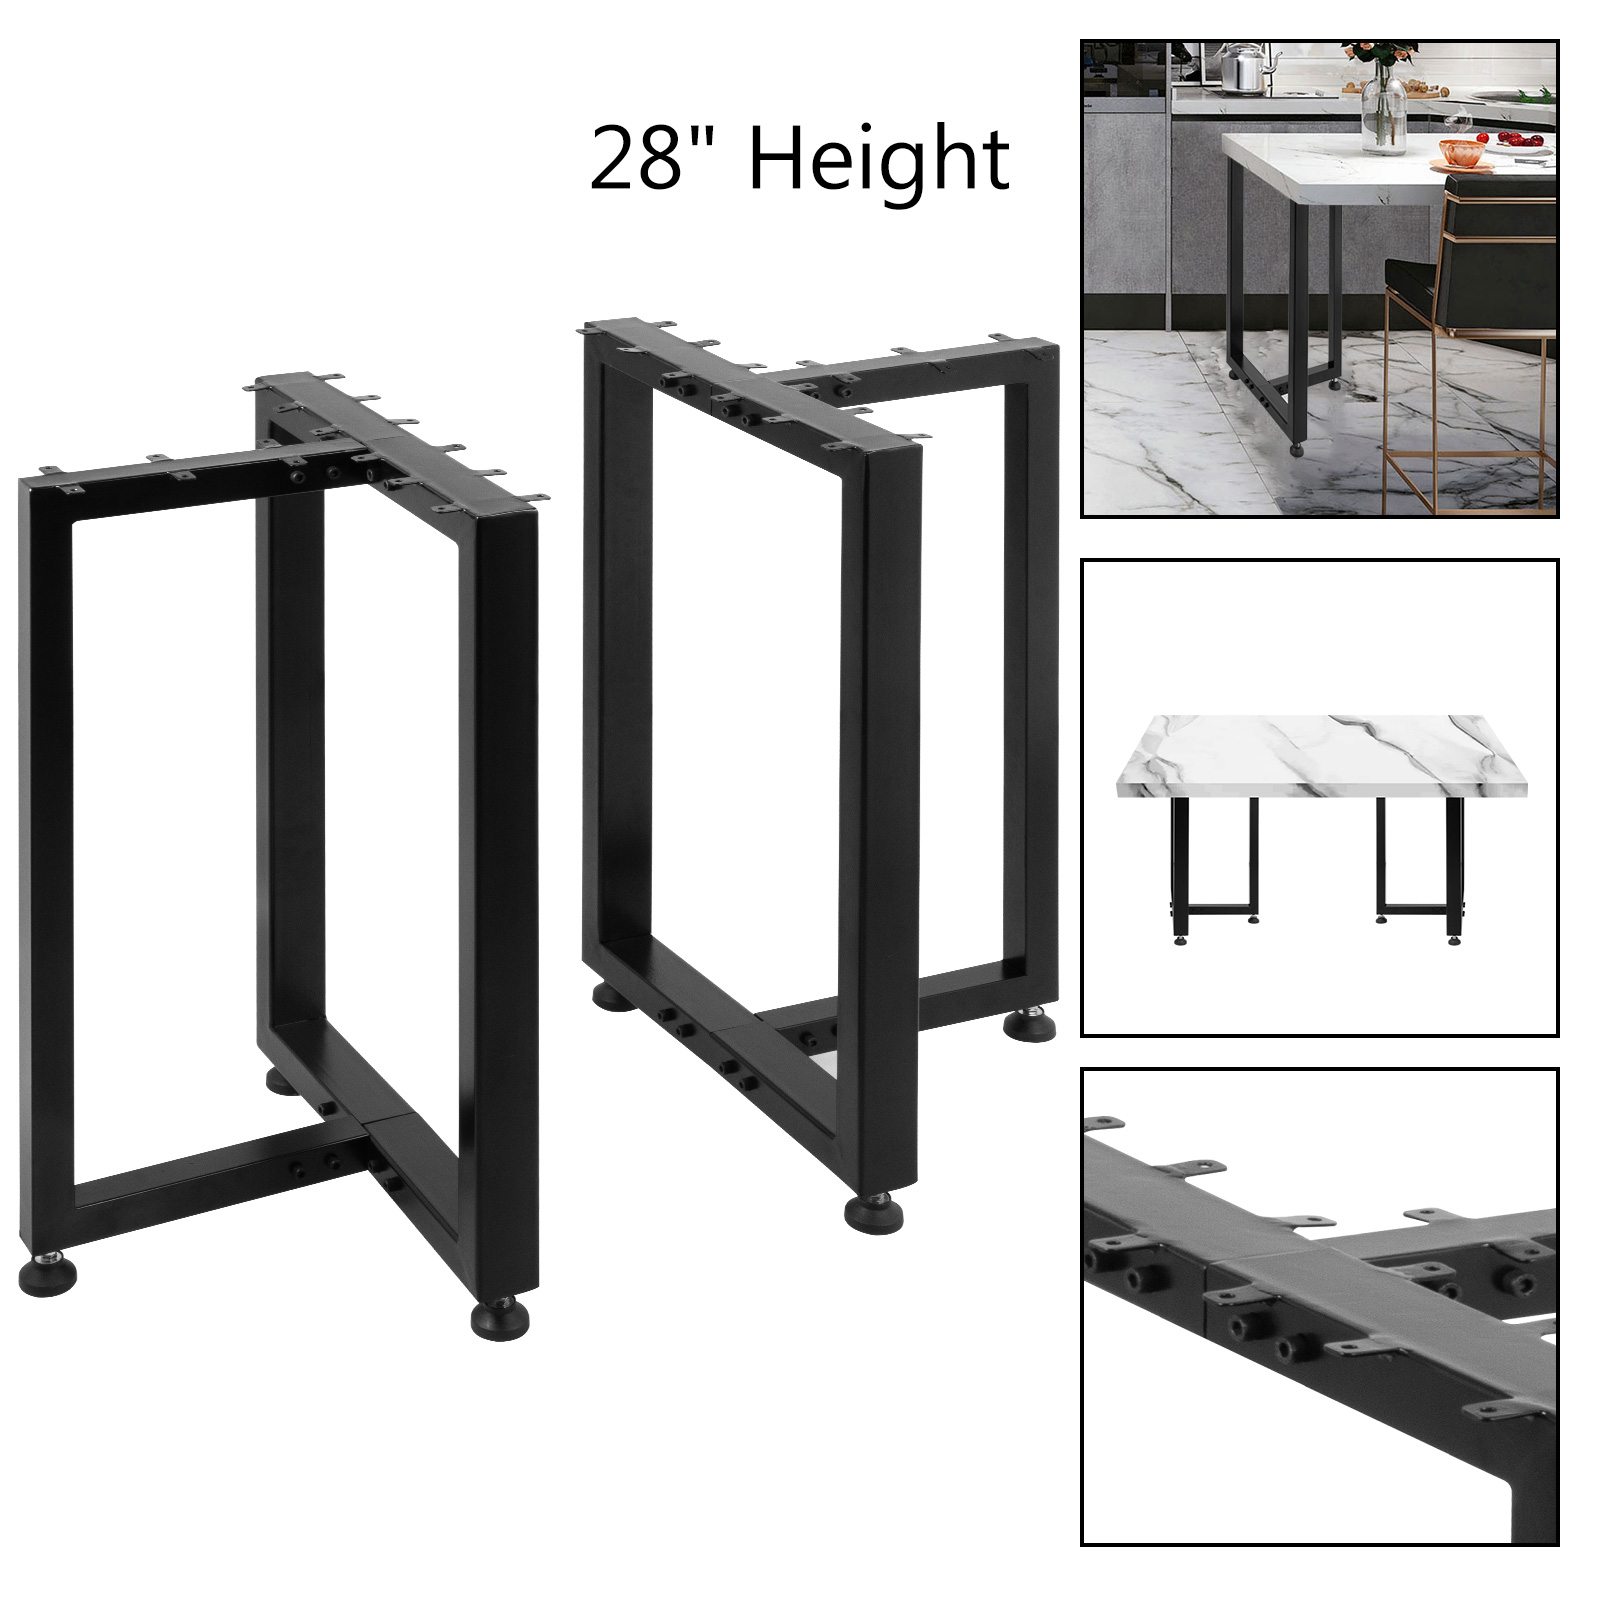 Details about   16''/28" 4 Styles DIY Table Desk Steel Legs Modern Heavy Duty Furniture W/Screw 